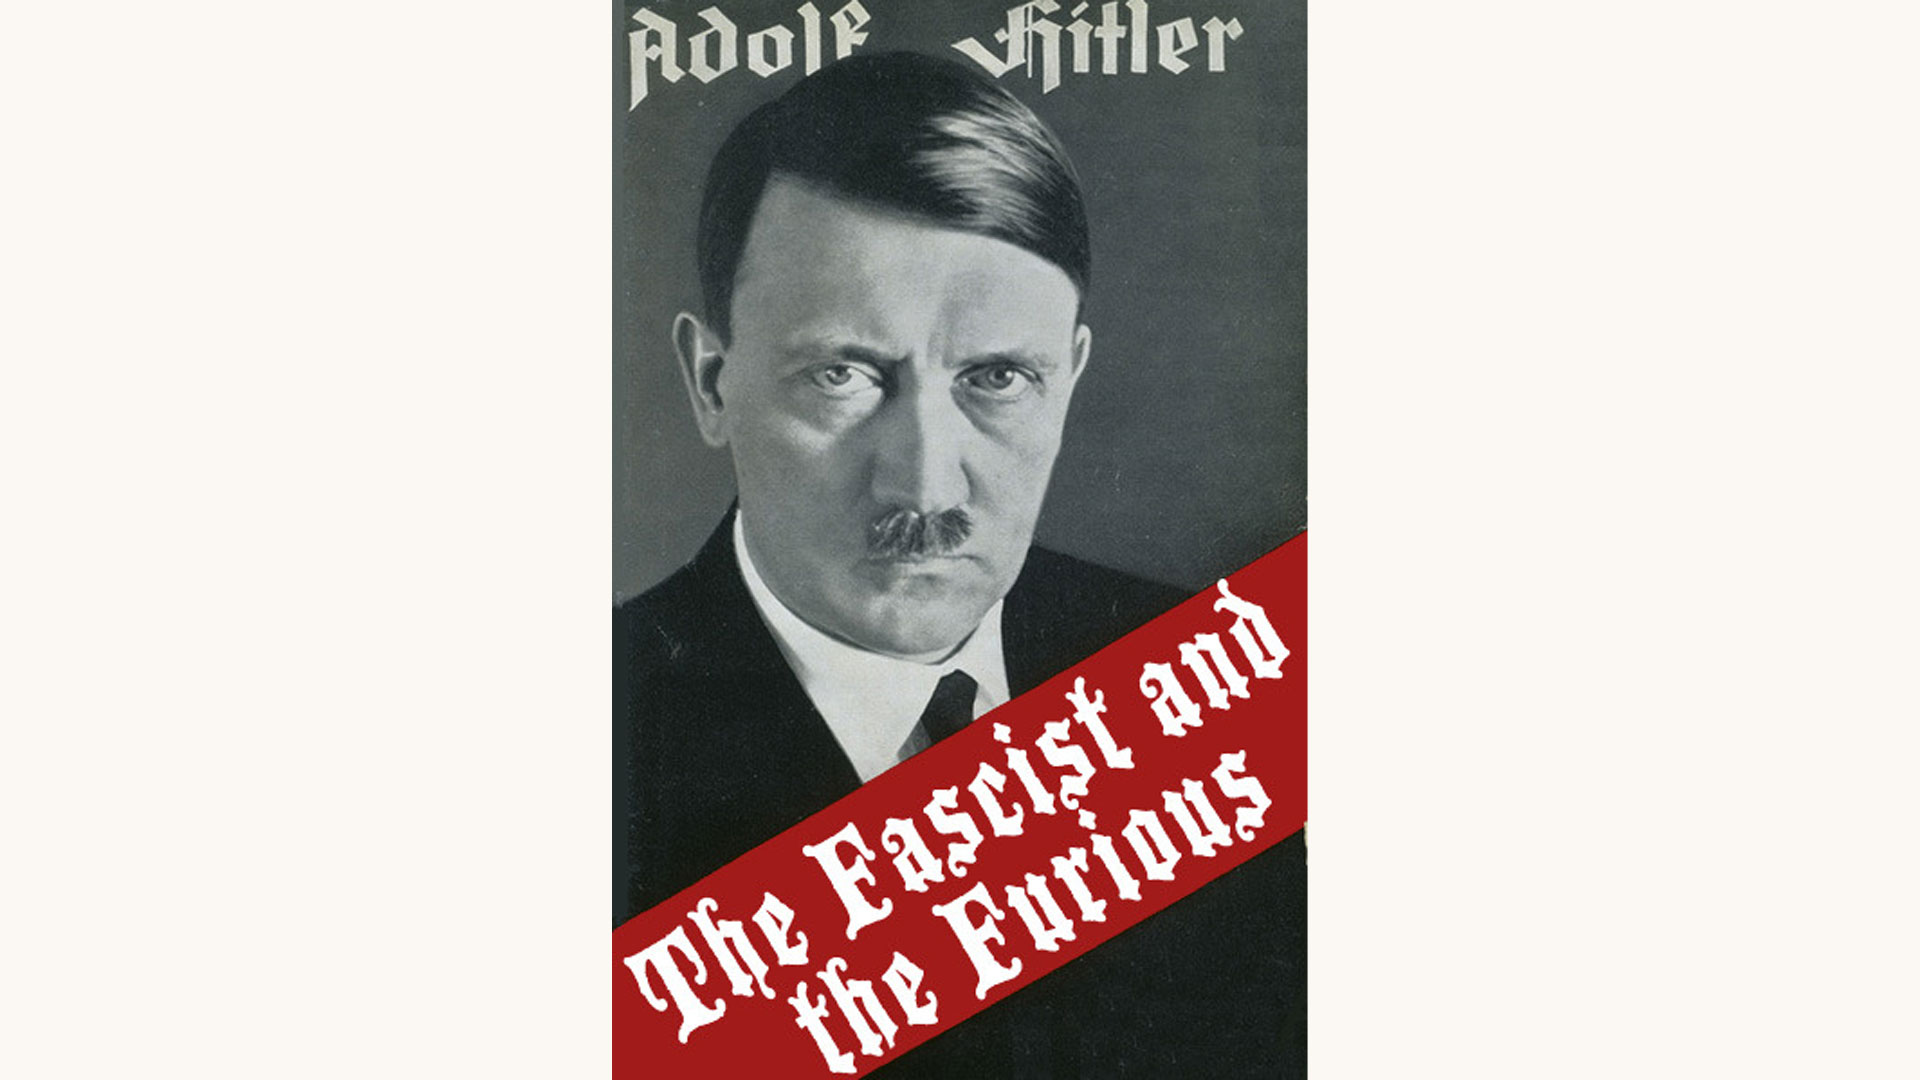 Adolf Hitler: Mein Kampf - Better Book Titles